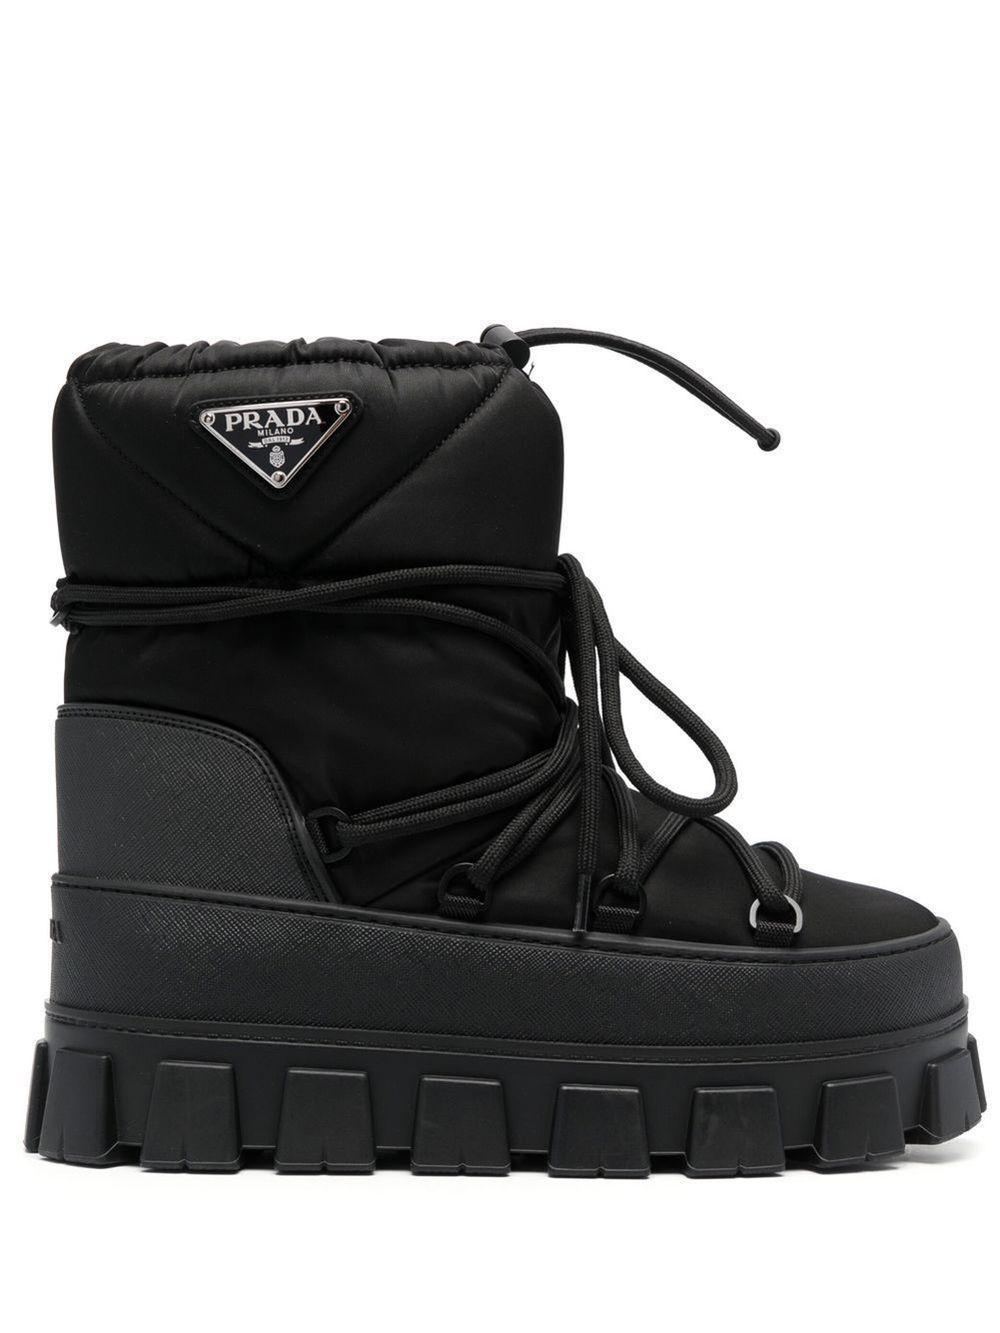 Prada Logo Plaque Snow Boots in Black | Lyst